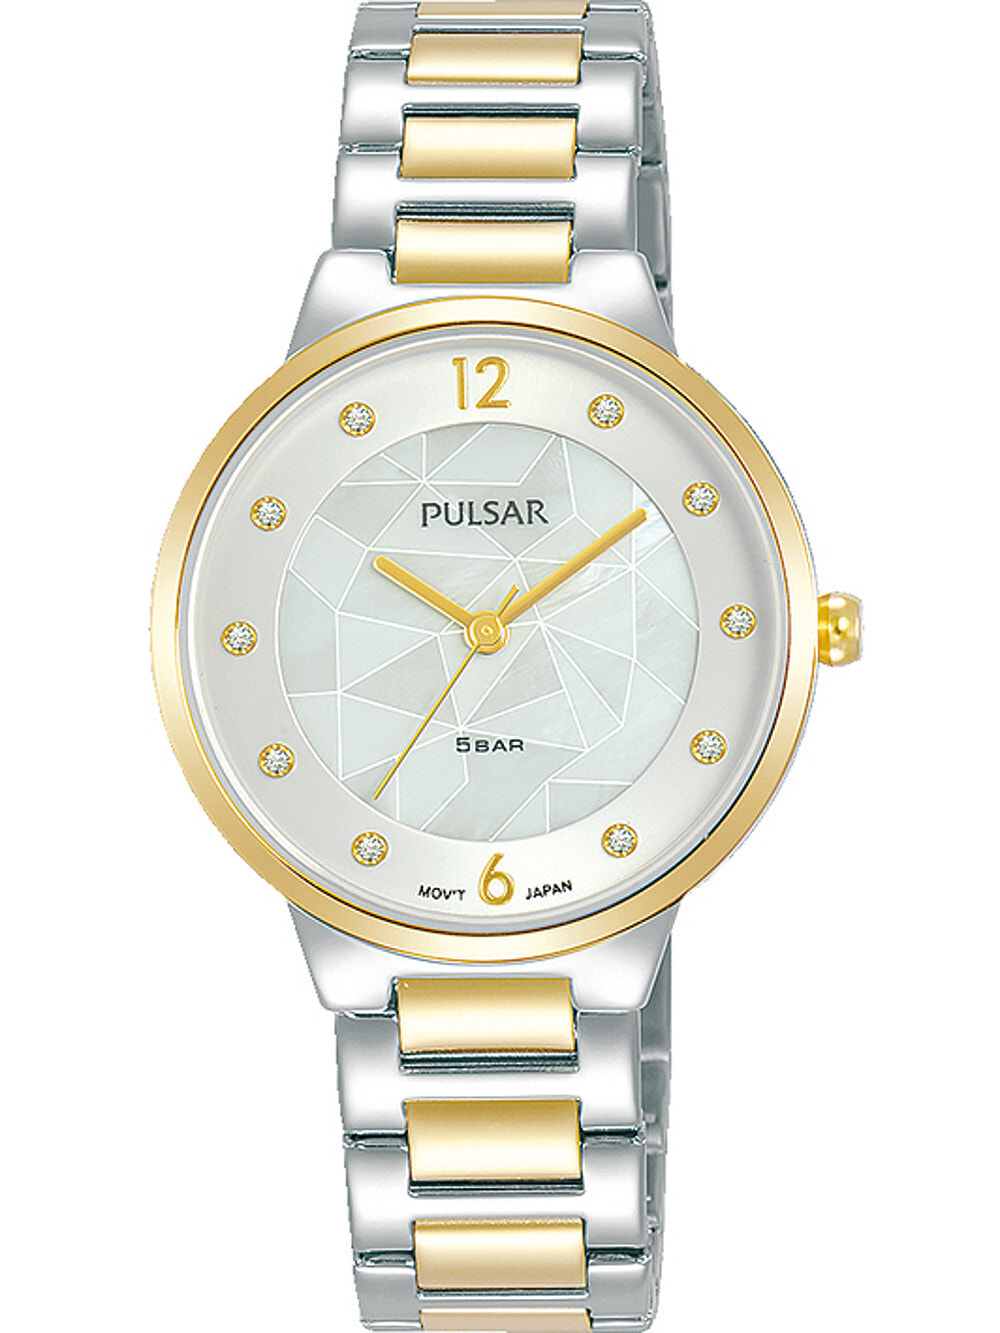 Женские наручные кварцевые часы Pulsar ремешок из нержавеющей стали. Водонепроницаемость-5 АТМ. Прочное, минеральное стекло. Циферблат декорирован камнями Swarovski.